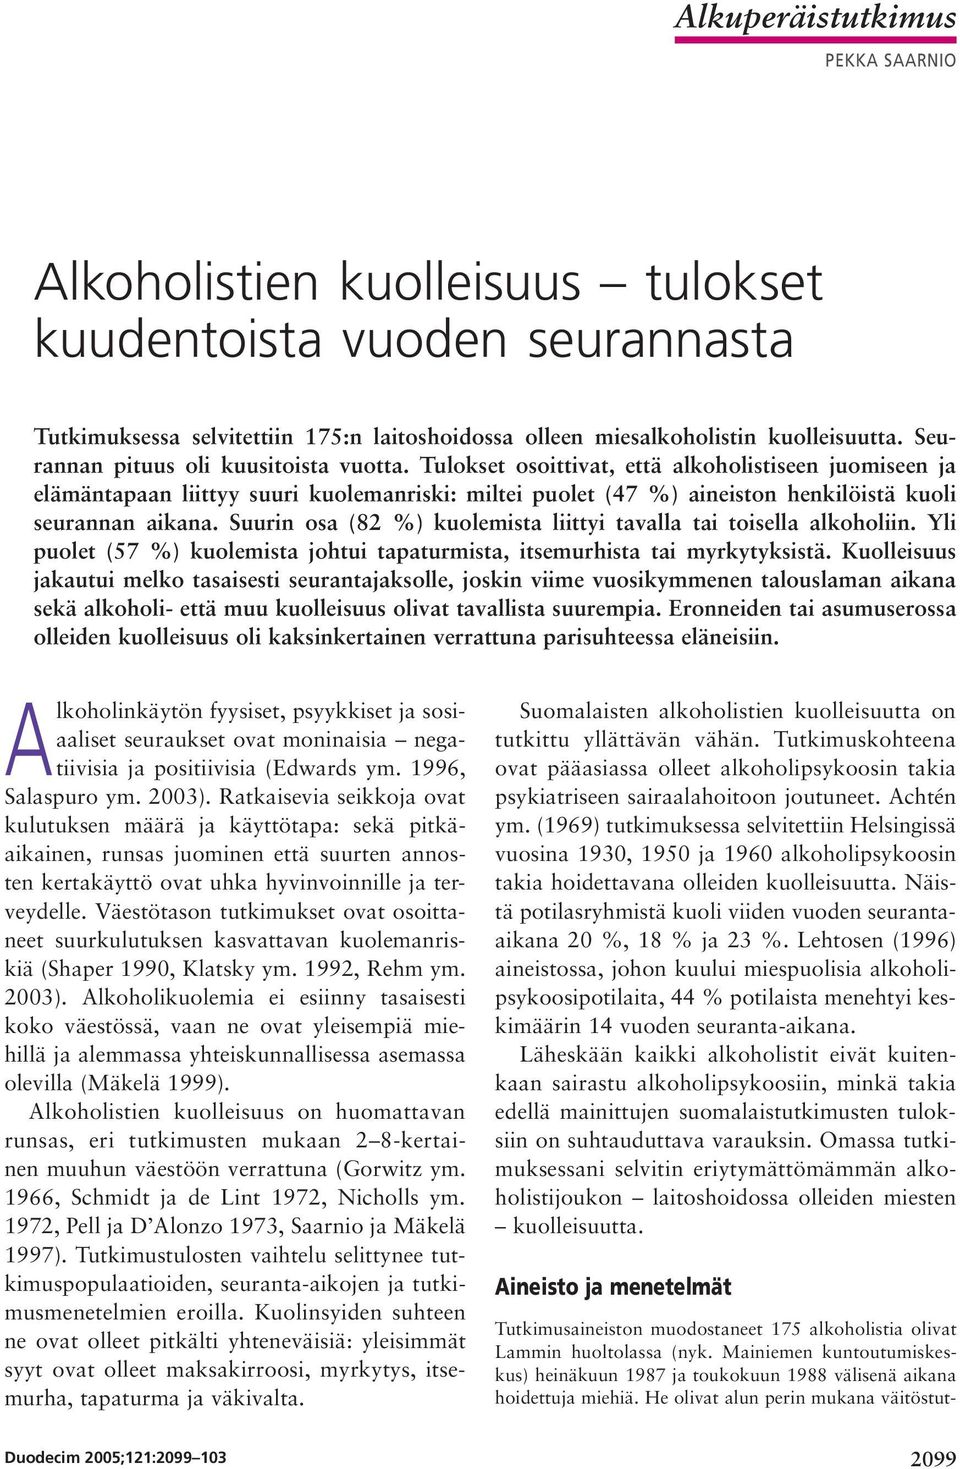 Tulokset osoittivat, että alkoholistiseen juomiseen ja elämäntapaan liittyy suuri kuolemanriski: miltei puolet (47 %) aineiston henkilöistä kuoli seurannan aikana.